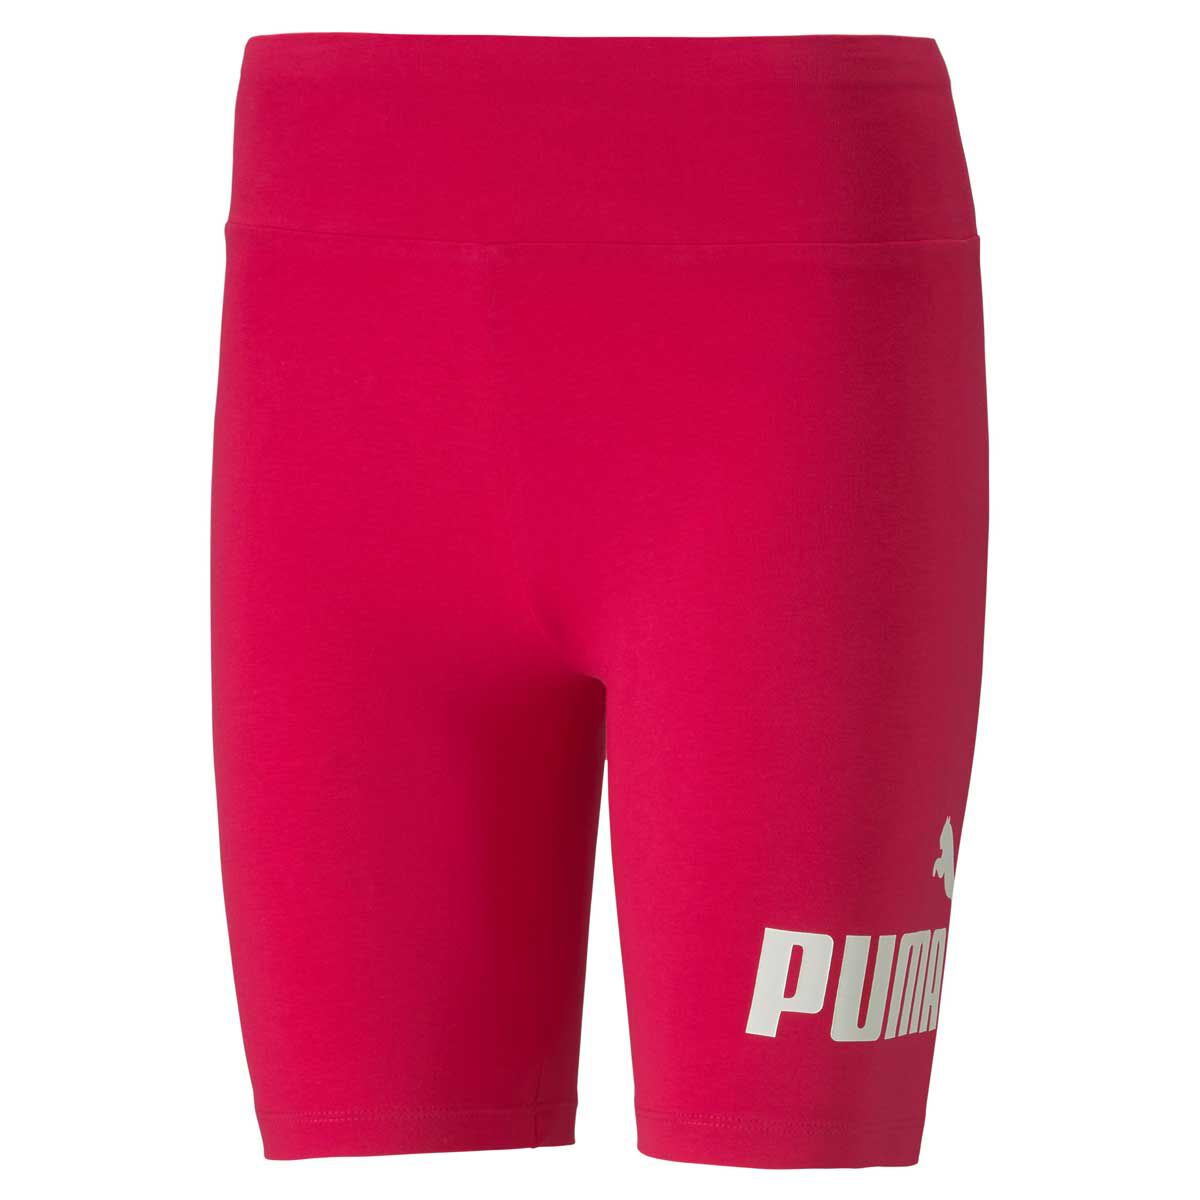 Puma Womens Essential 7 Inch Short 